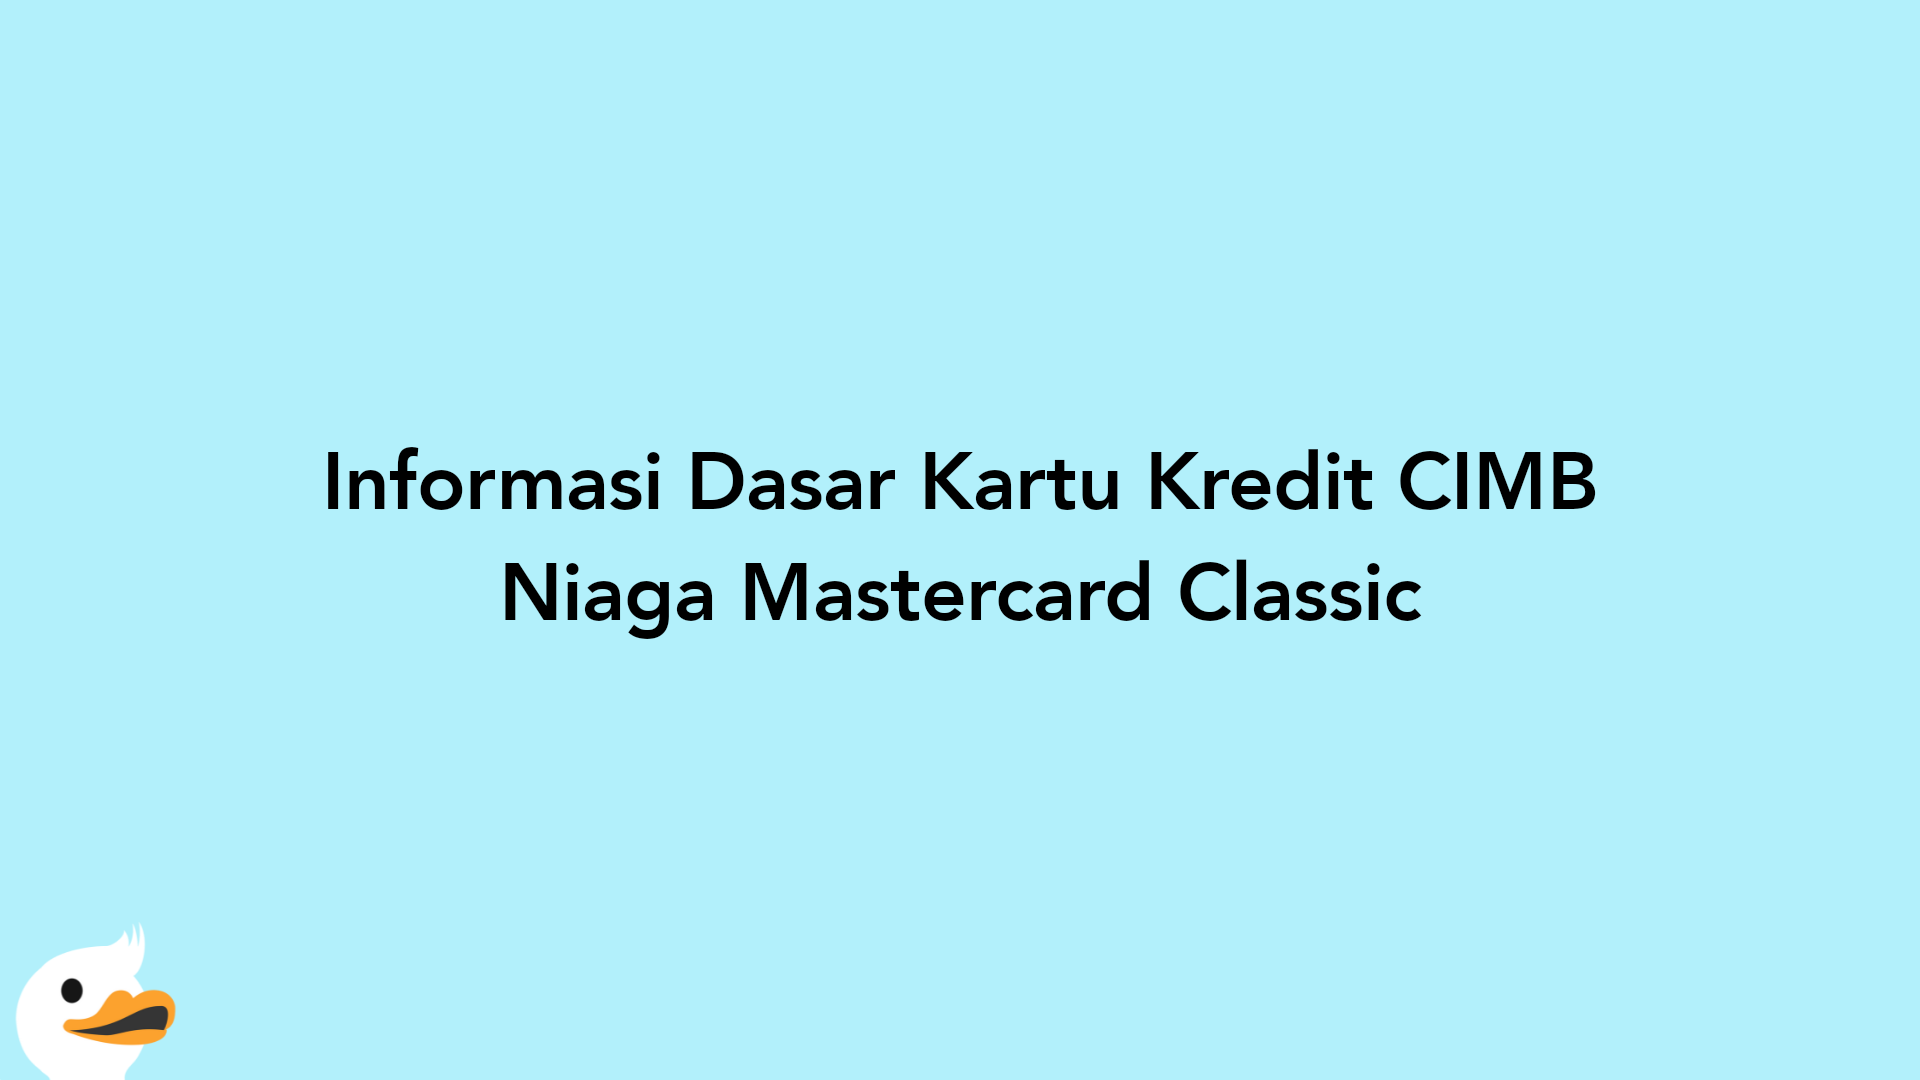 Informasi Dasar Kartu Kredit CIMB Niaga Mastercard Classic